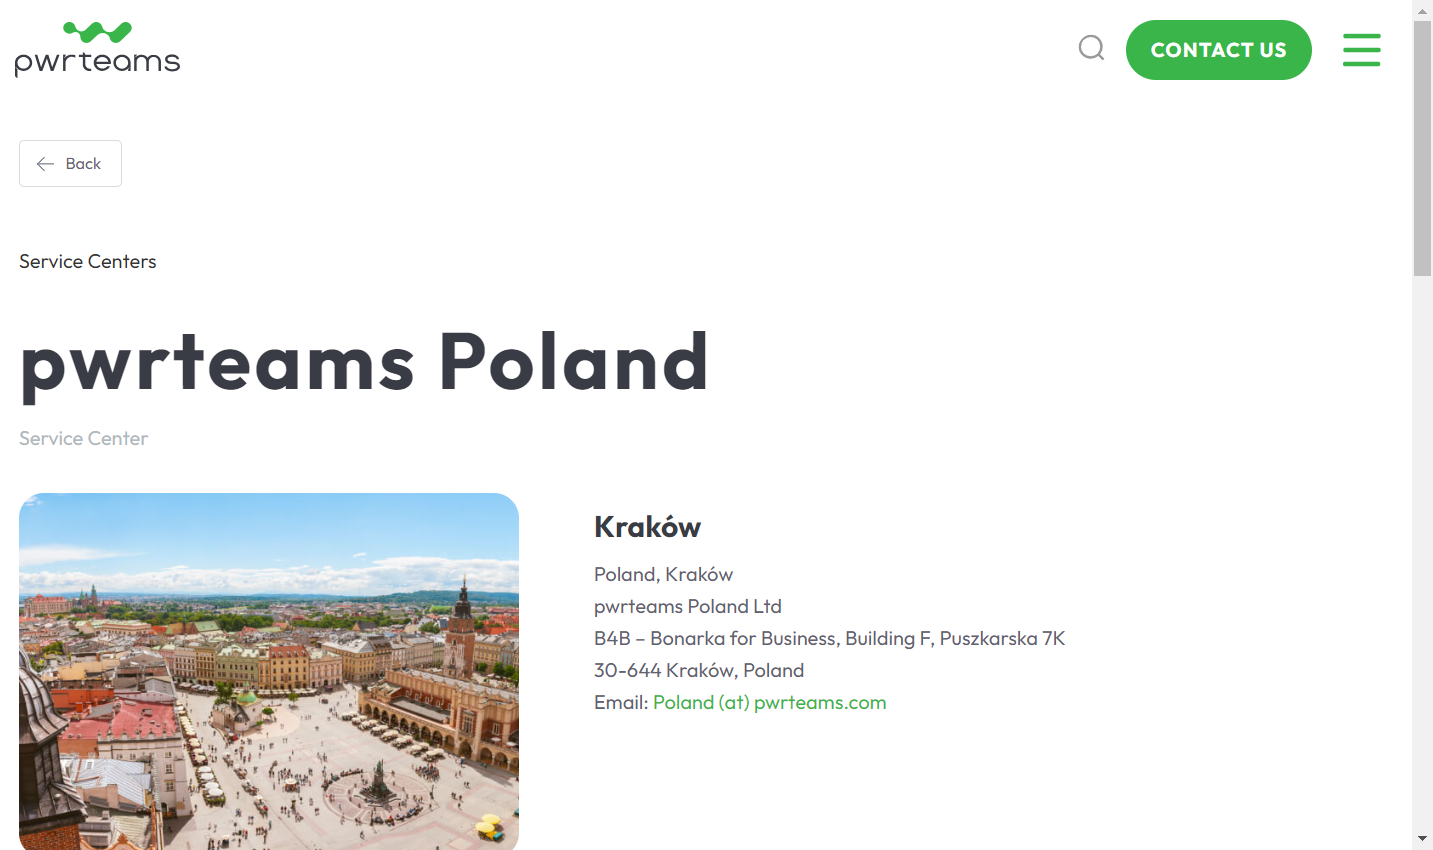 pwrteams Poland, a Nortal group company